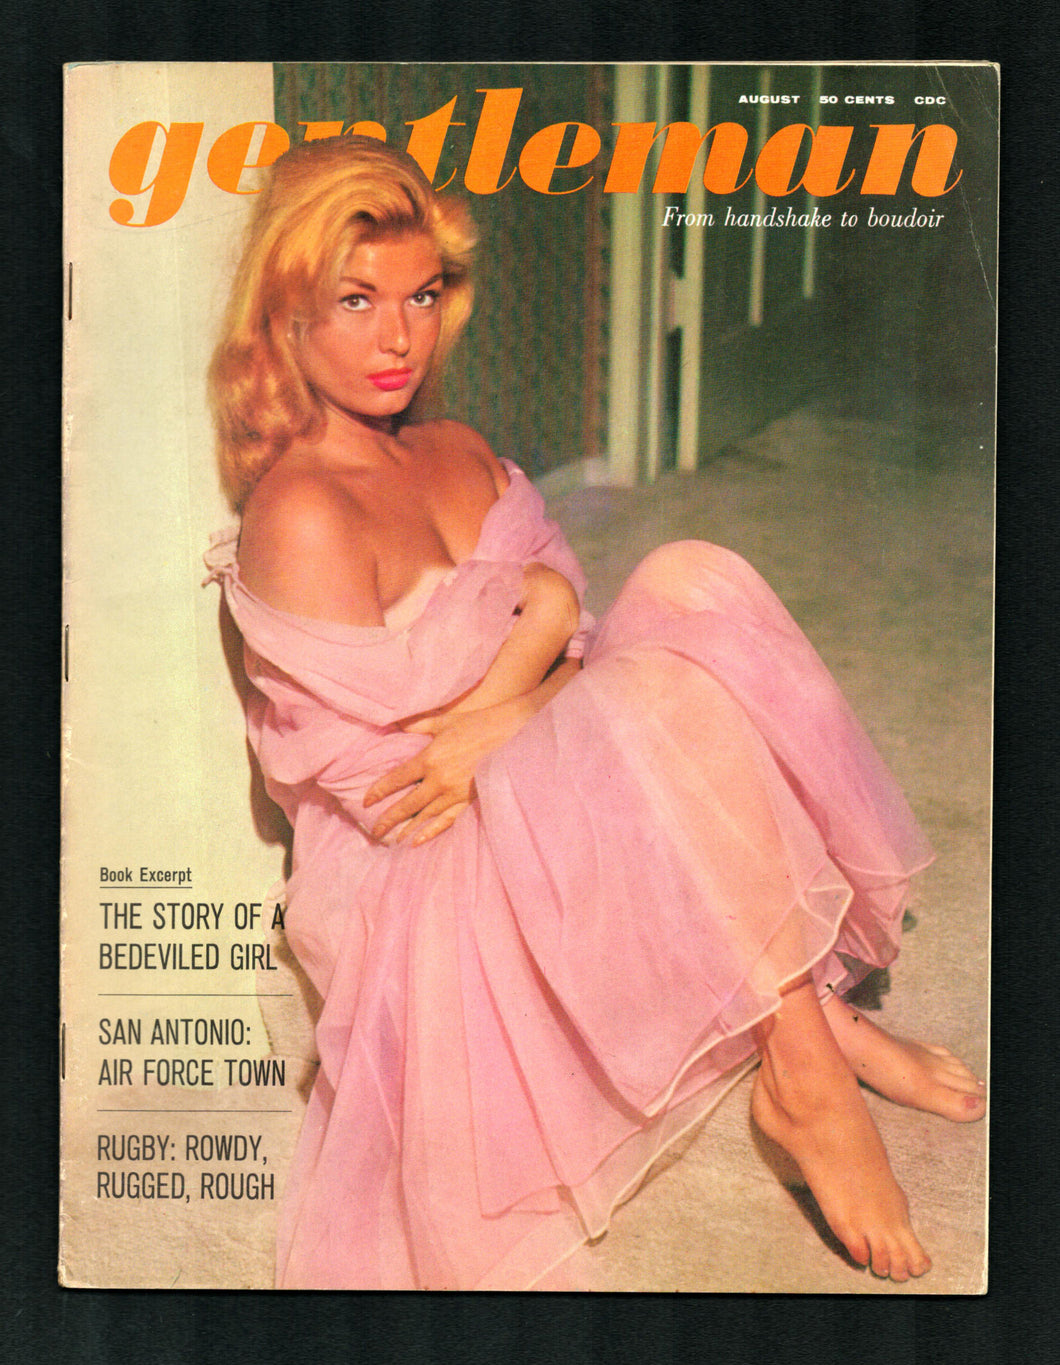 Gentleman Vol 2 No 1 Aug 1961